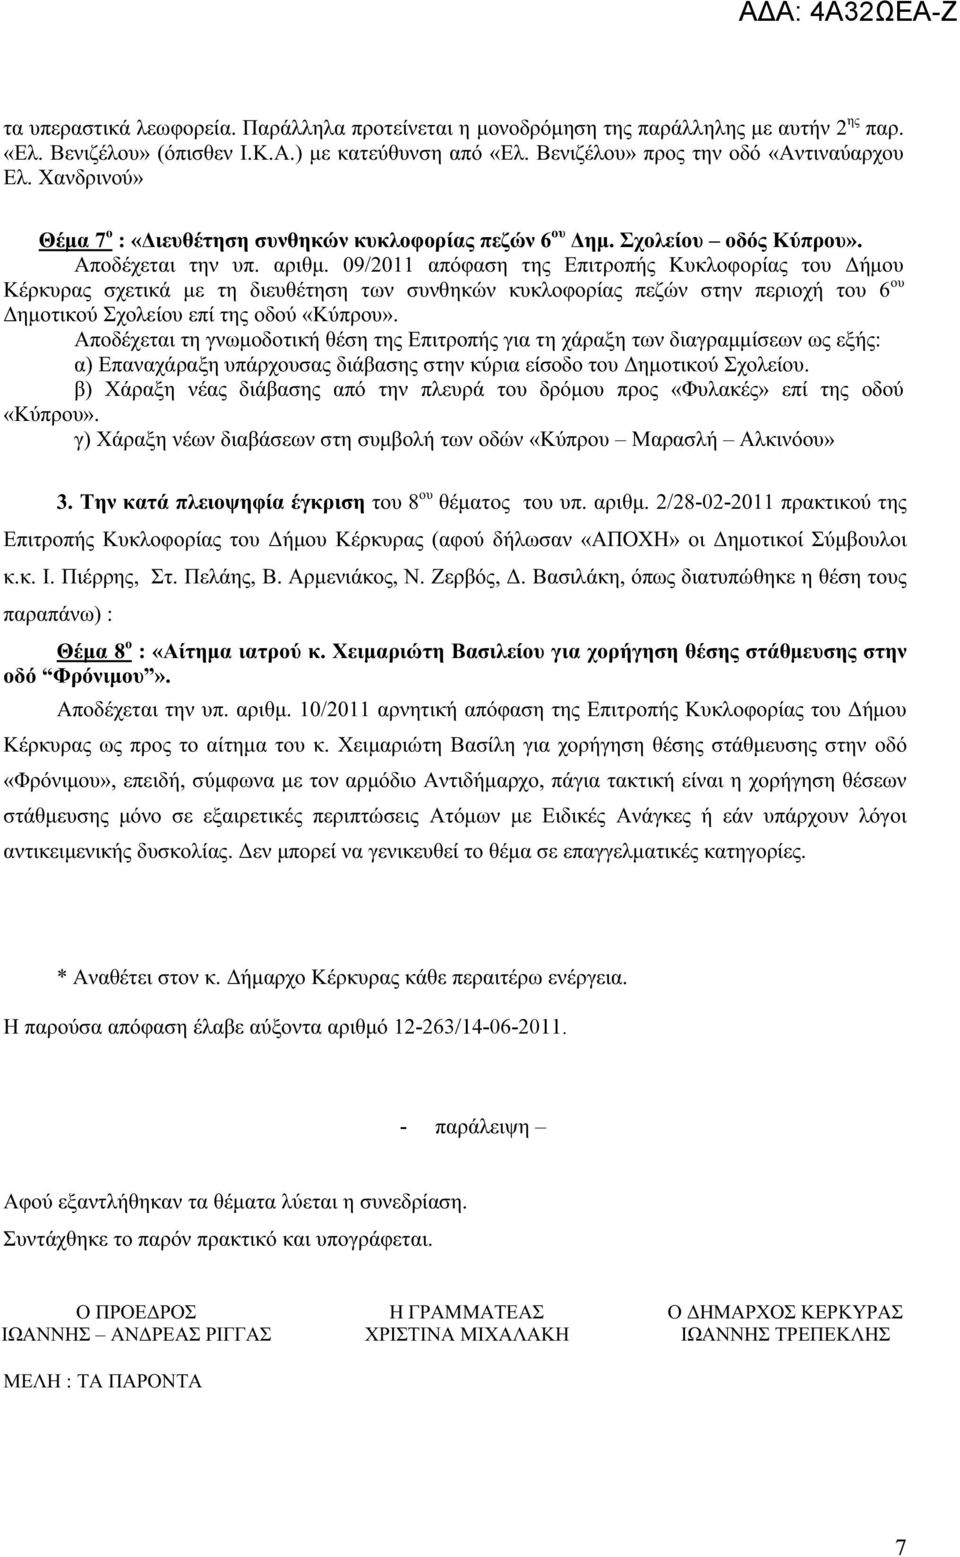 09/2011 απόφαση της Επιτροπής Κυκλοφορίας του Δήμου Κέρκυρας σχετικά με τη διευθέτηση των συνθηκών κυκλοφορίας πεζών στην περιοχή του 6 ου Δημοτικού Σχολείου επί της οδού «Κύπρου».